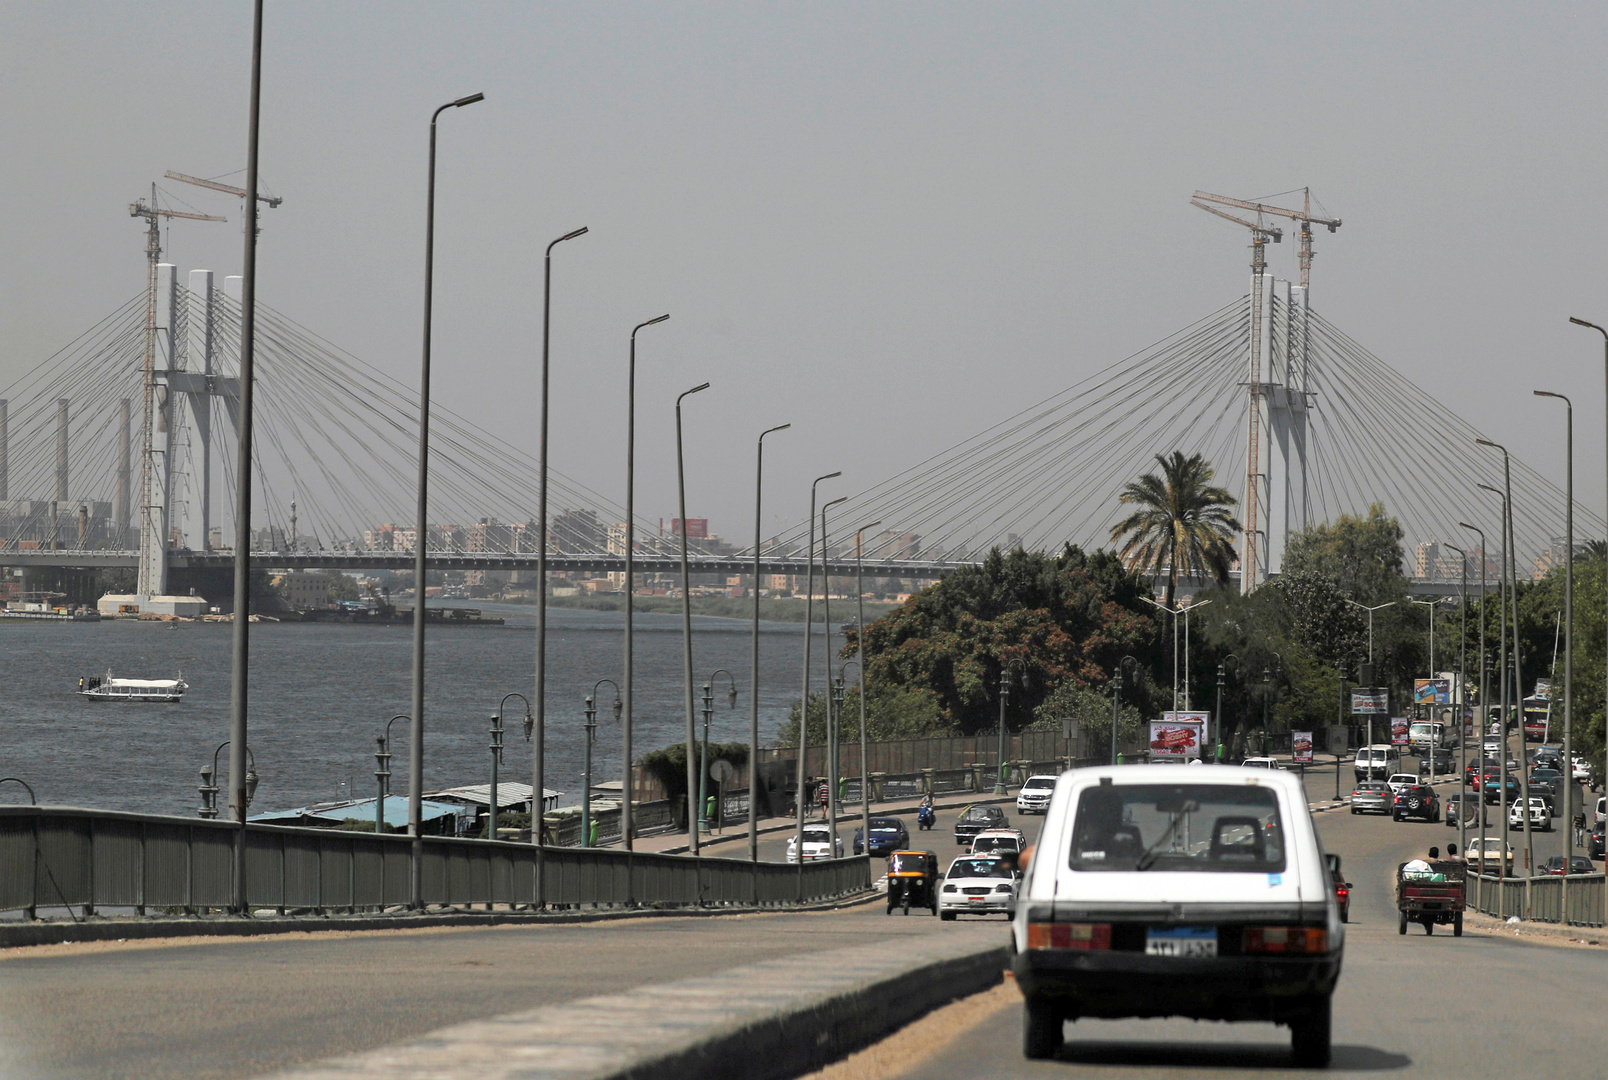 مصر تطلق أول سيارة من نوعها بعد غياب طويل